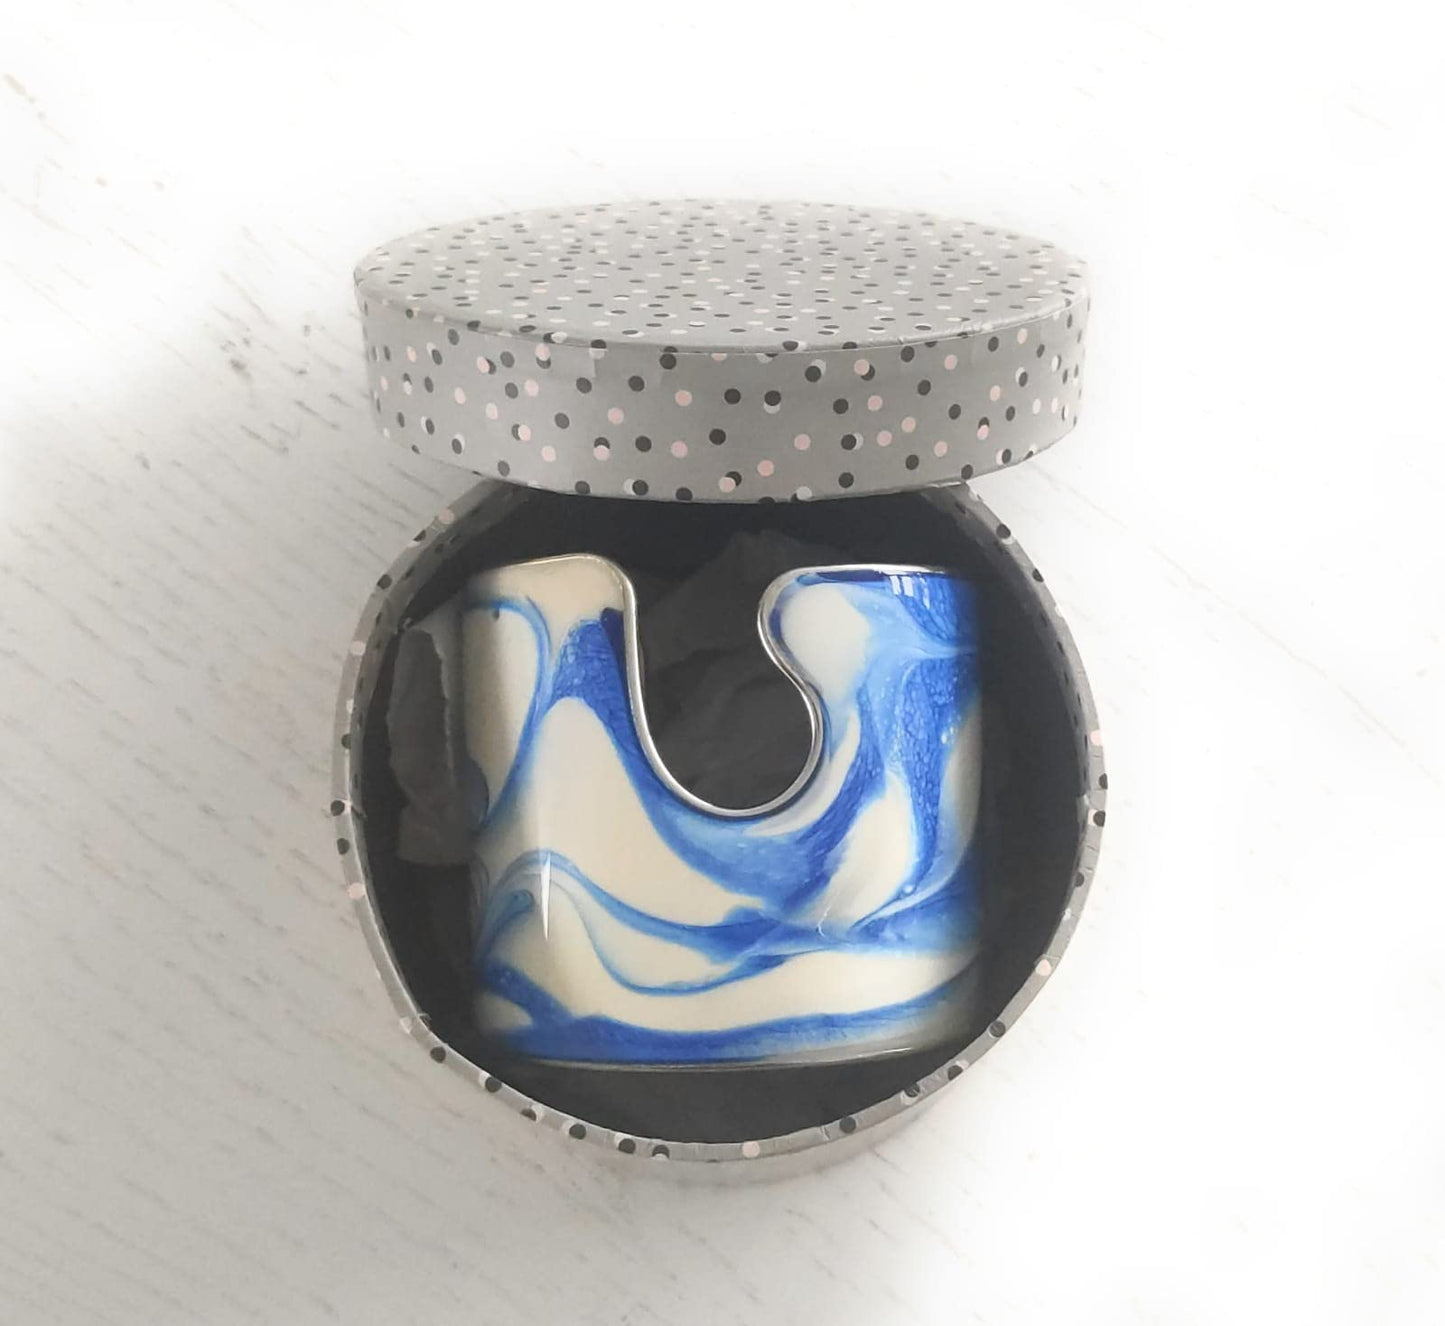 Bracciale rigido in acciaio chirurgico e resina epoxy, gioiello fatto a mano, collezione Vulca (bianco / azzurro)